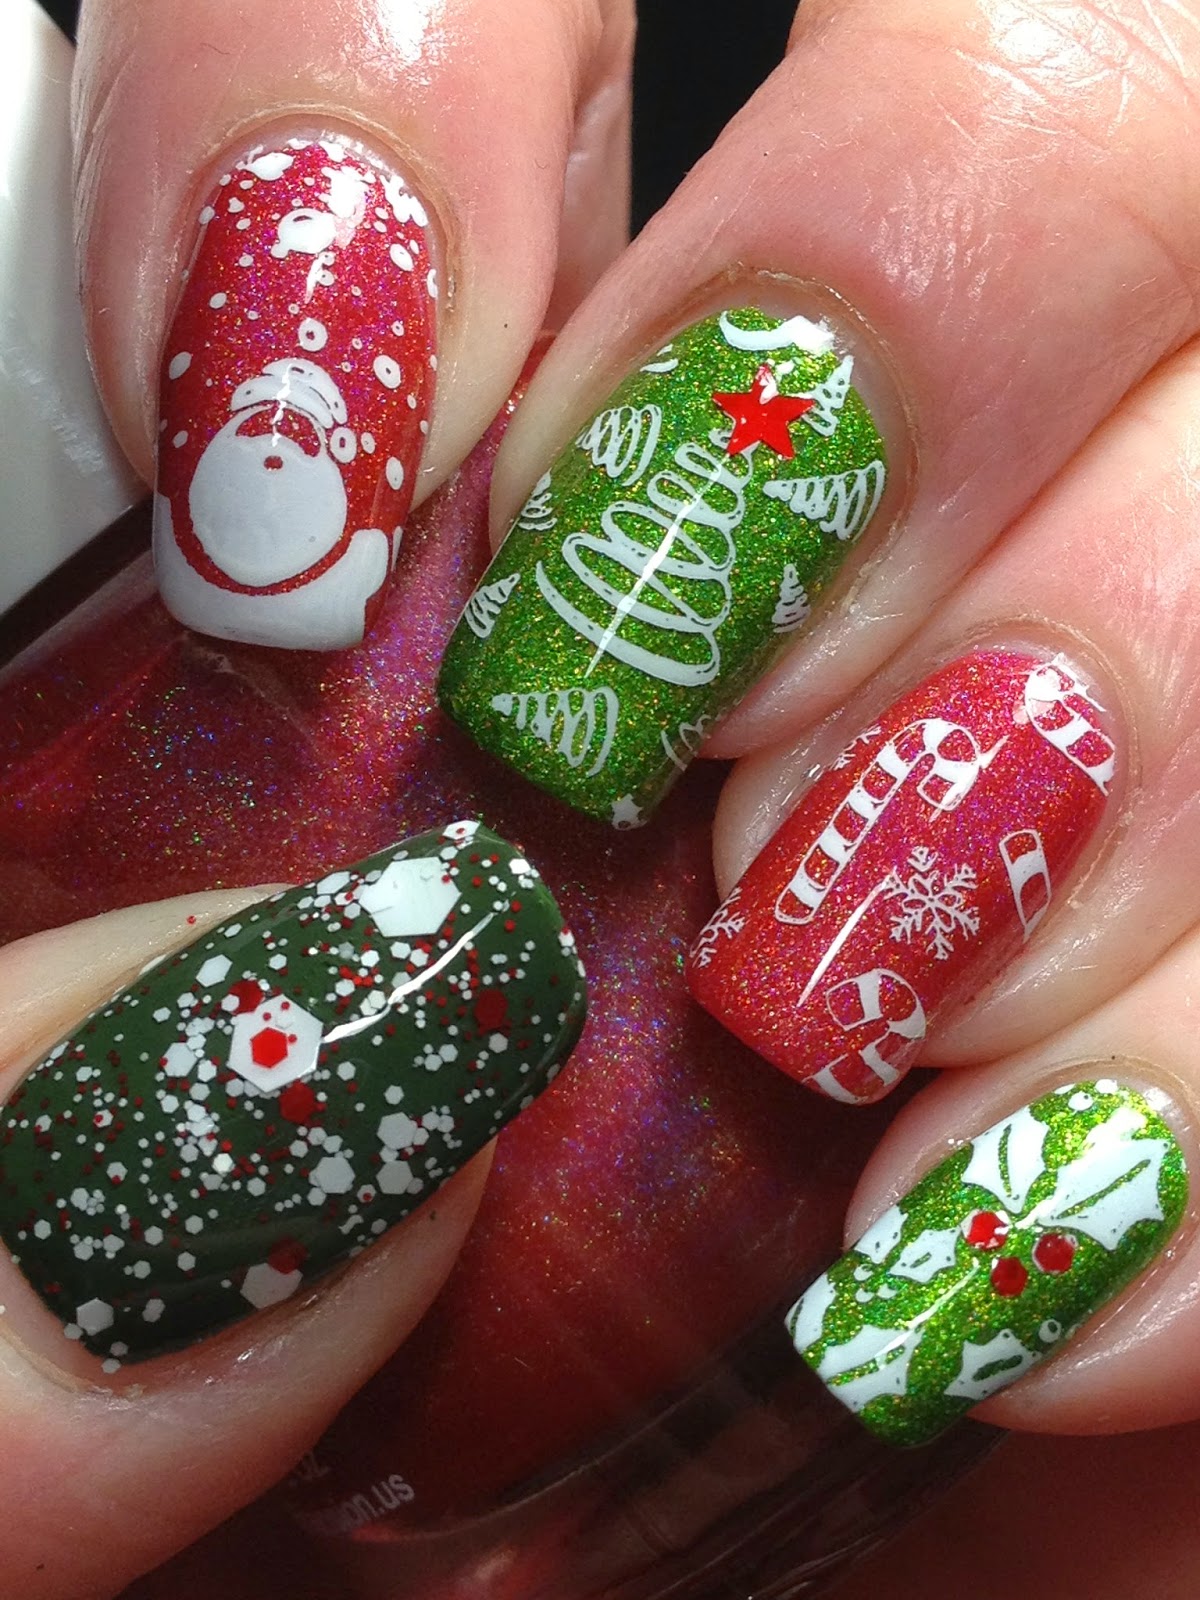 Canadian Nail Fanatic: Christmas Nails!